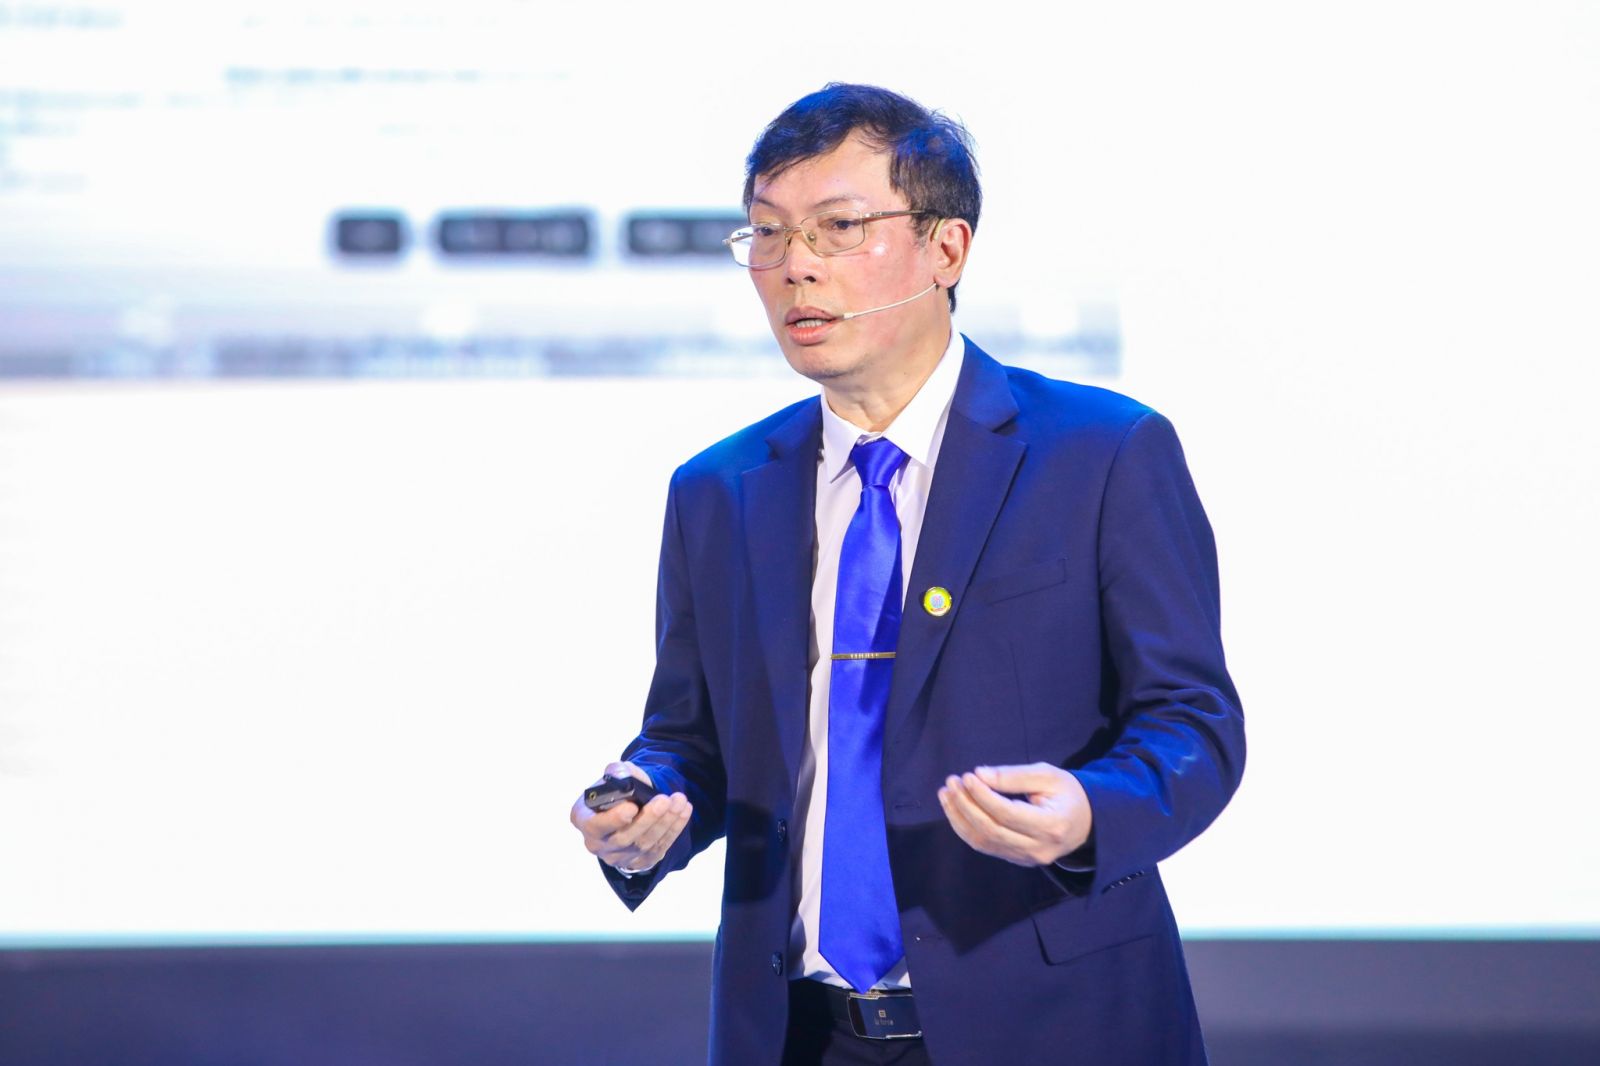 TS. Đặng Minh Tuấn, Viện trưởng Viện Nghiên cứu Ứng dụng Công nghệ CMC ATI